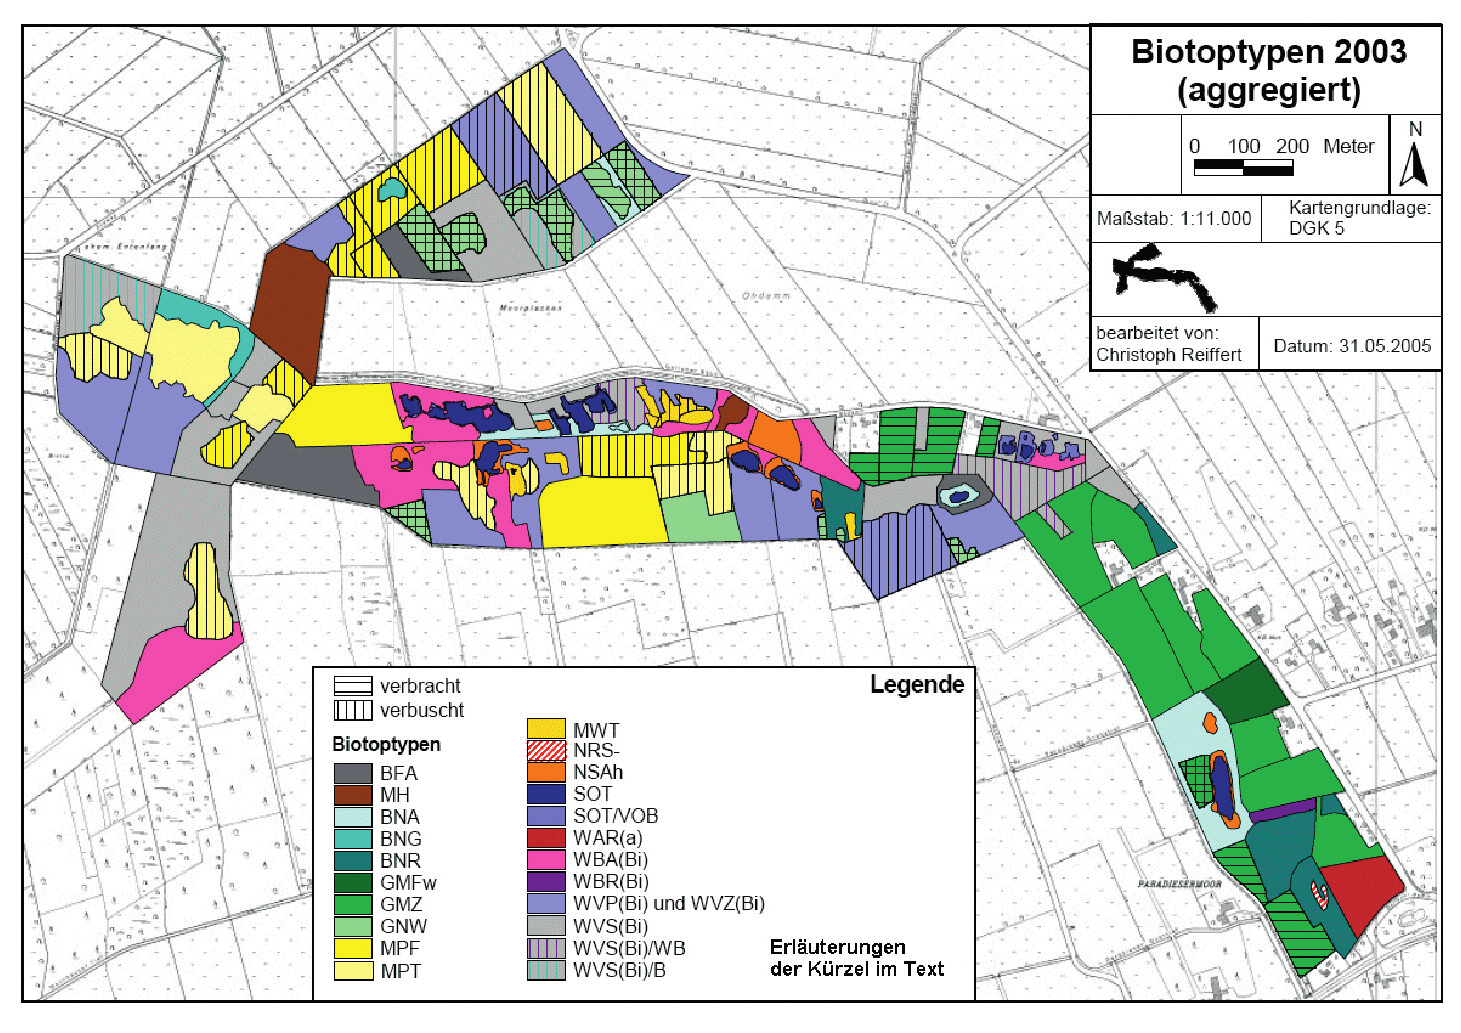 Abb. 4: Aktuelle Karte (2003 2005) der Biotop-Verteilung in der Gellener Torfmöörte. Flächen treten Sphagnum-Arten (v. a. S. palustre) zum Teil mit lokaler Deckung bis 50 % auf.